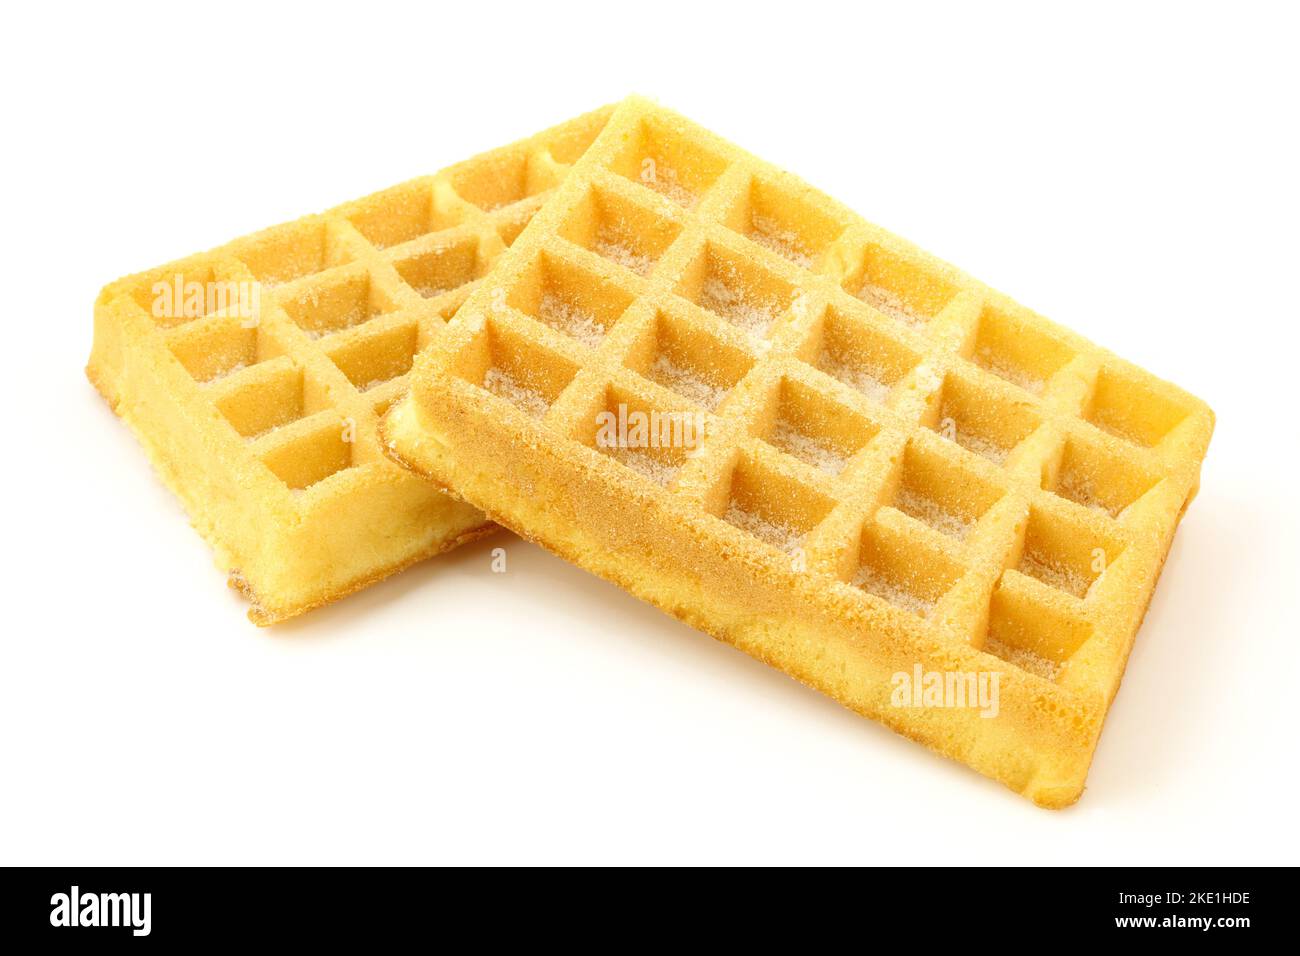 Two plain belgian waffles isolated on white background Stock Photo